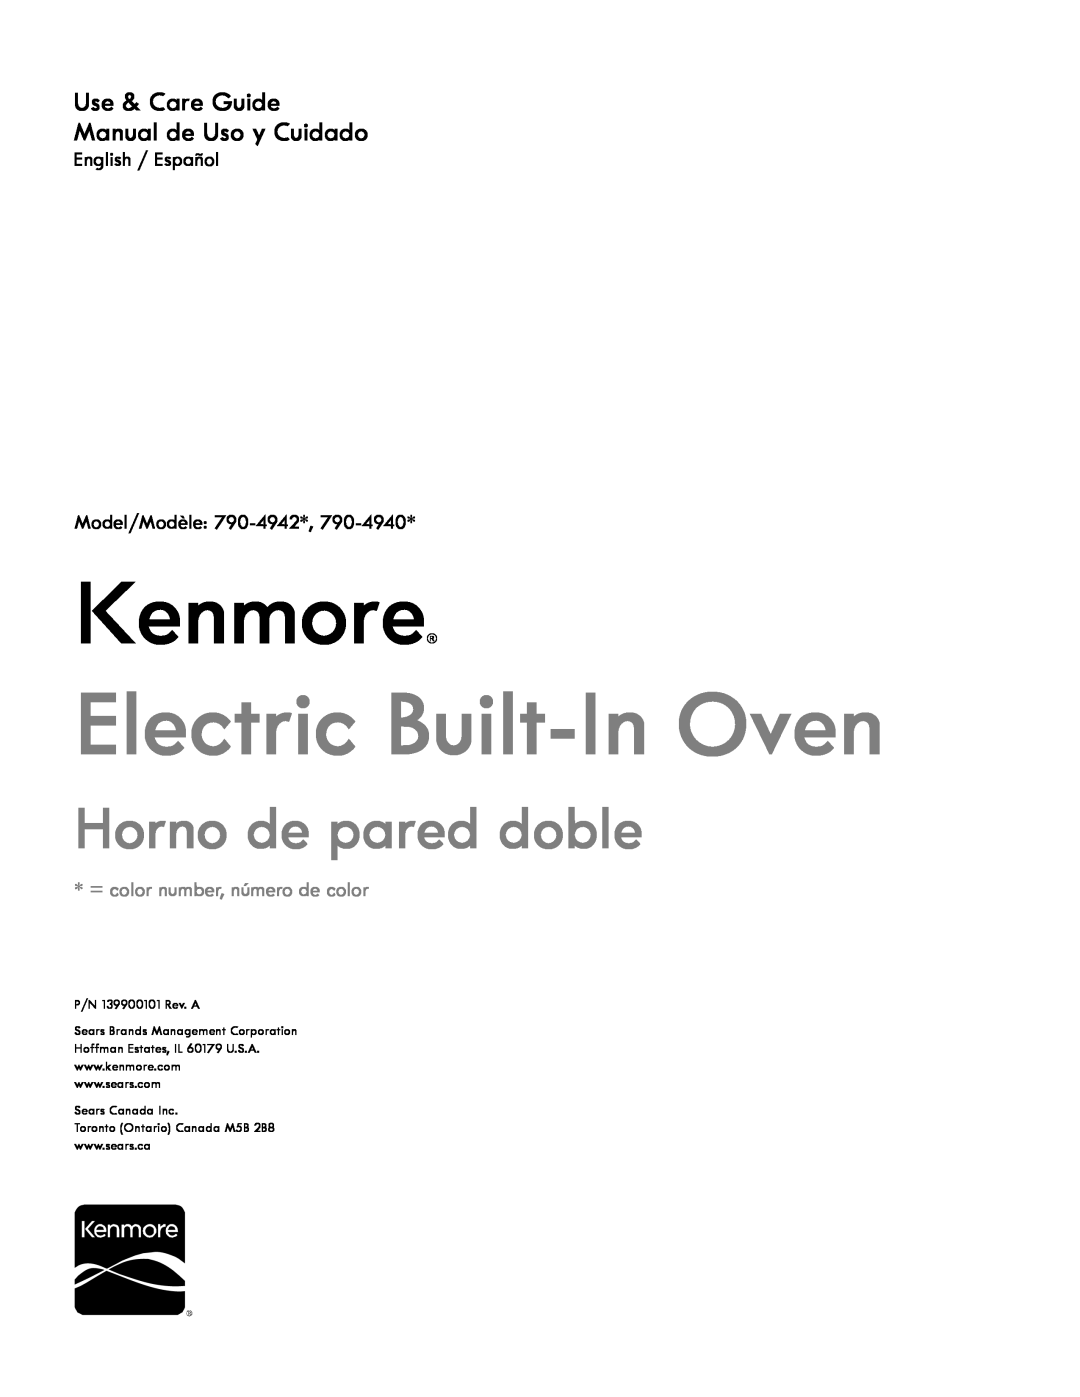 Kenmore 790-4940 manual Kenmore, Electric Built-In Oven, Horno de pared doble, Use & Care Guide Manual de Uso y Cuidado 